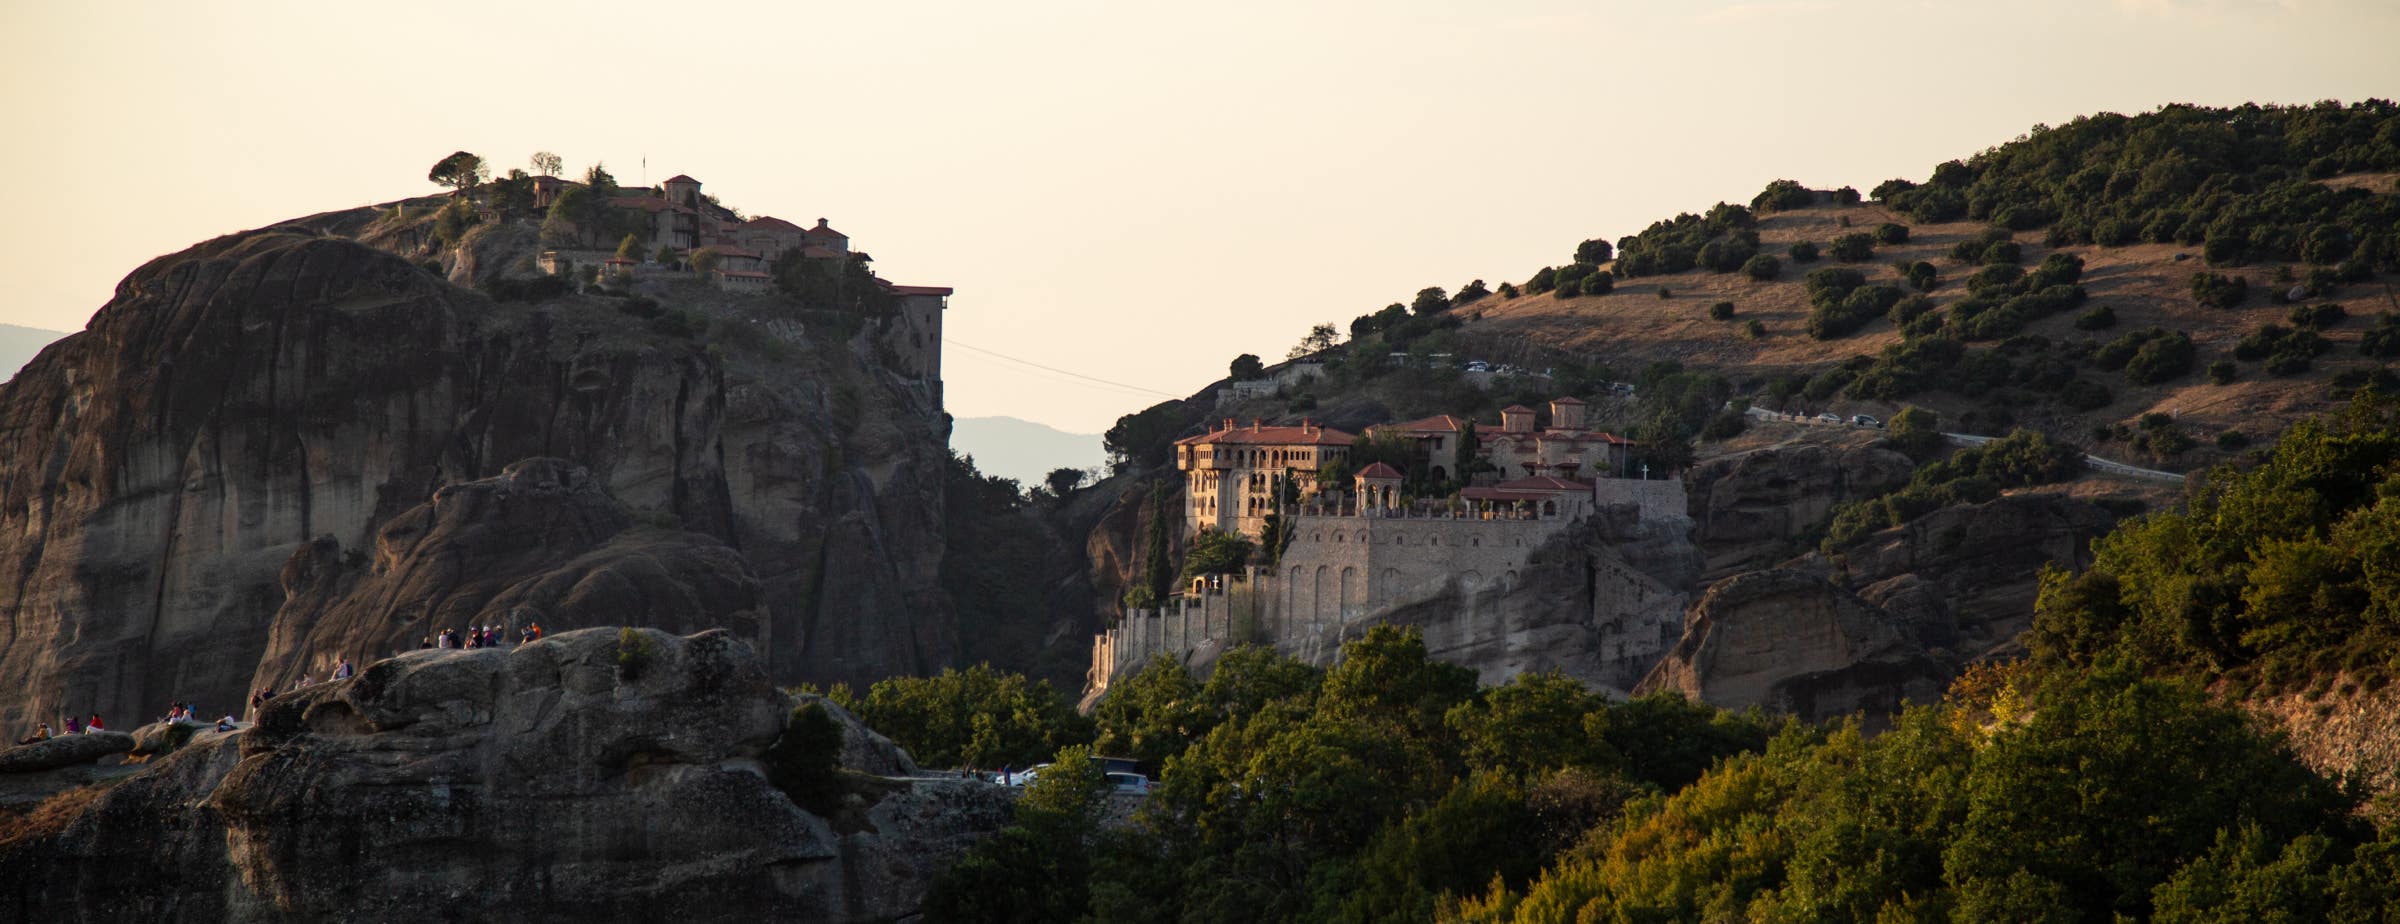 L'immagine mostra una vista delle rocce e di due monasteri di Meteora. Il monastero di sinistra si trova sulla cima di una roccia e il monastero di destra è costruito sulle rocce sul lato di una collina più grande.